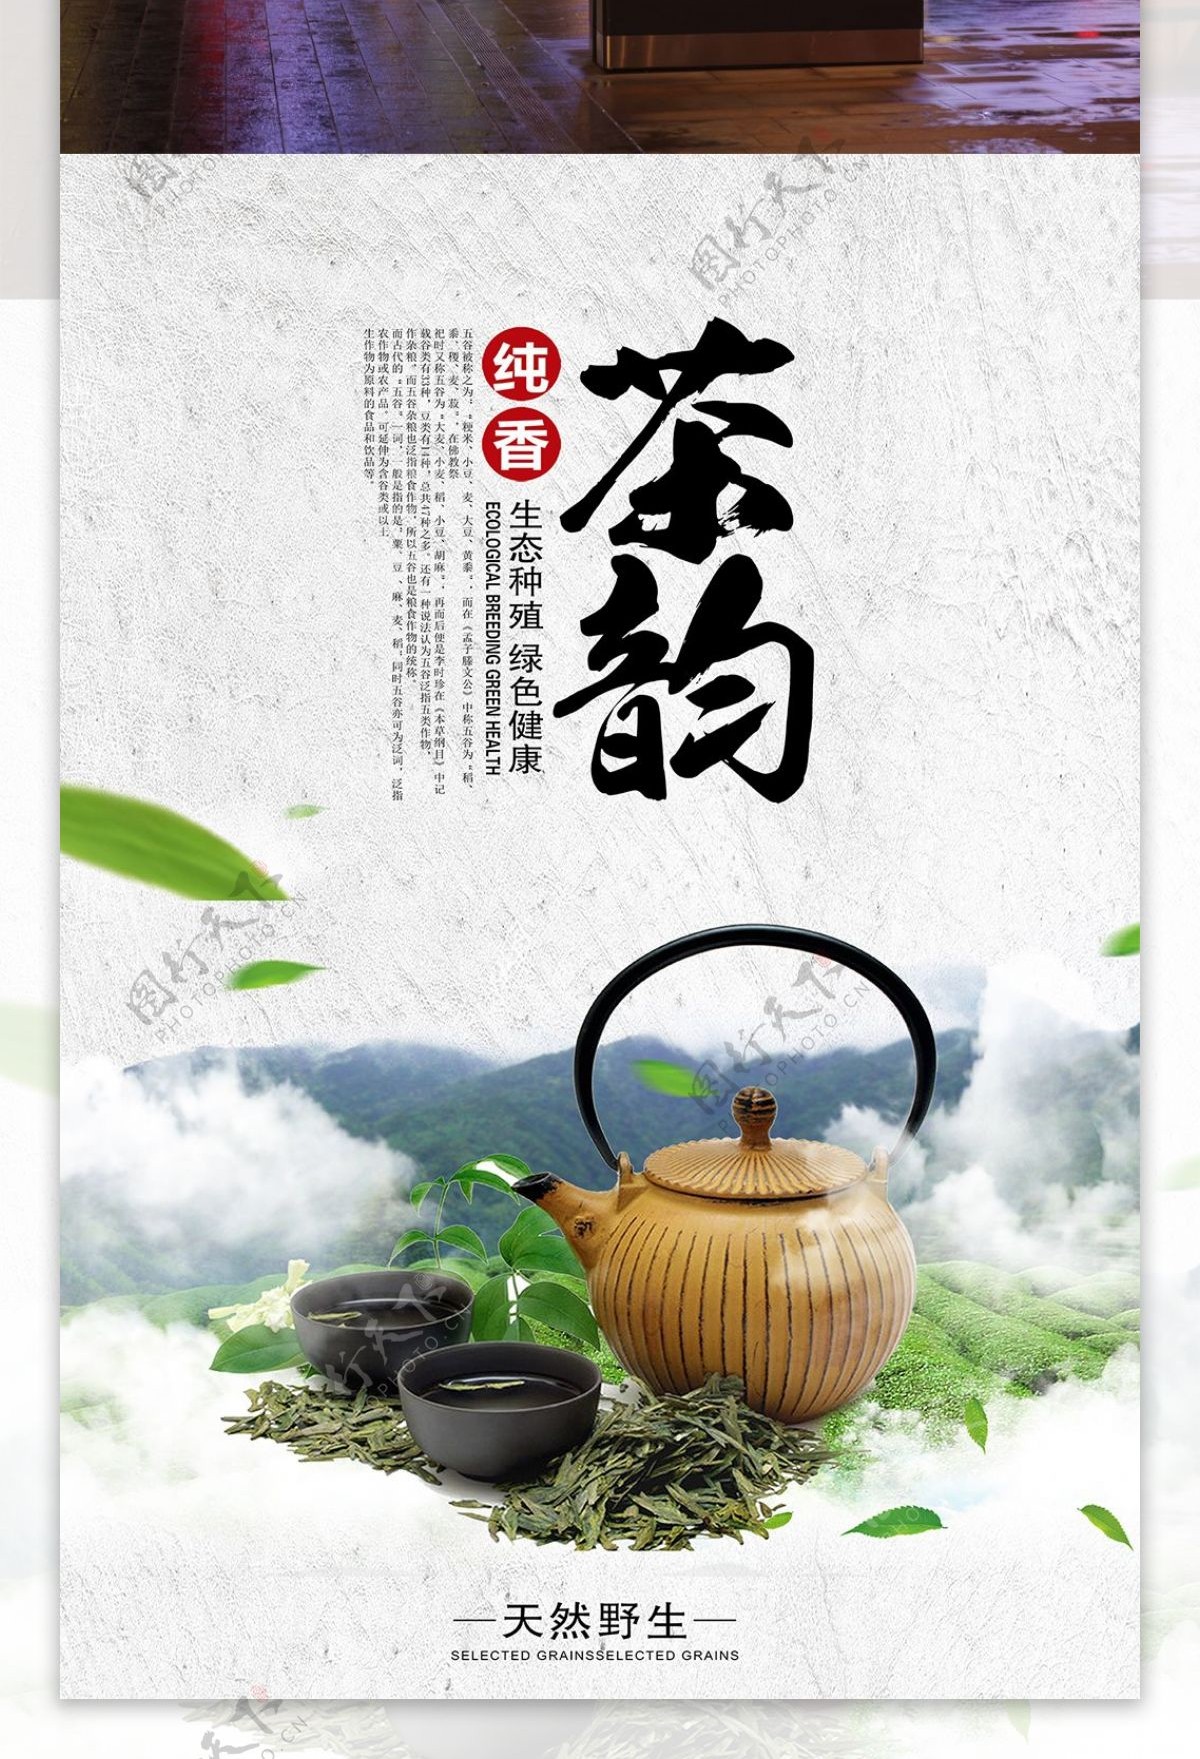 茶韵茶文化中国风海报